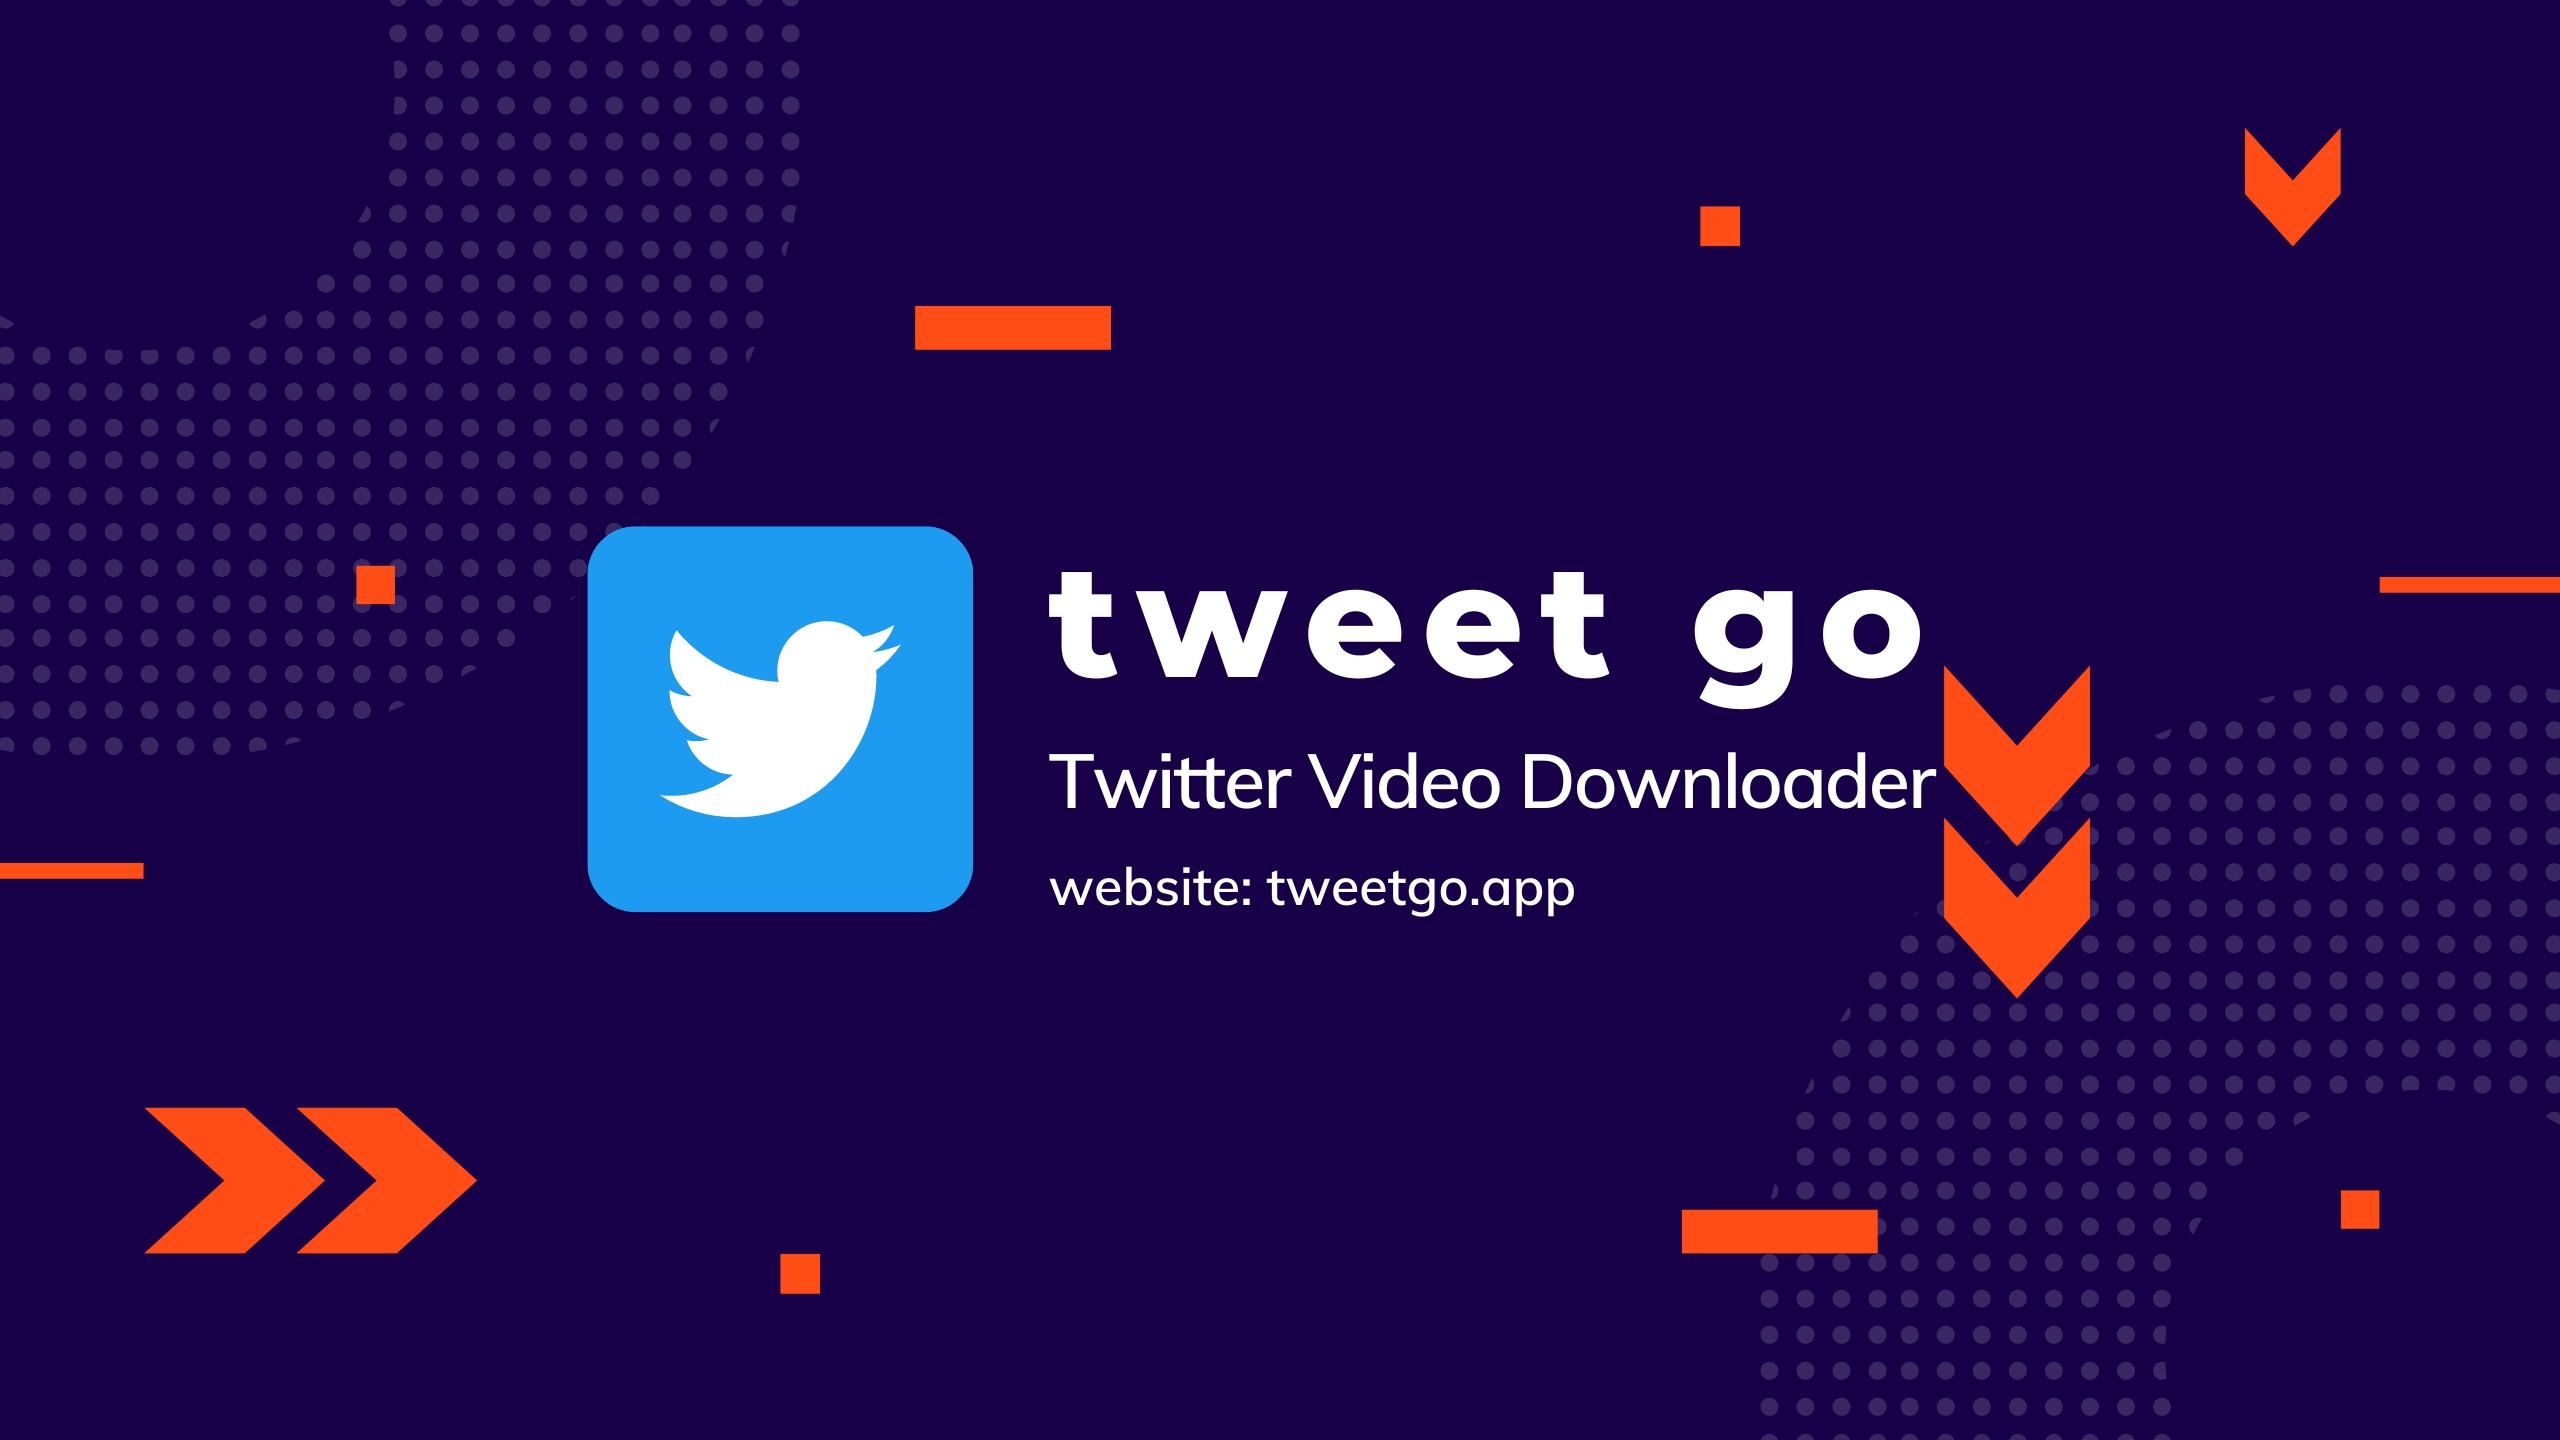 TweetGo (tweetgo.app) - Twitter Video Downloader - ツイッター 動画保存